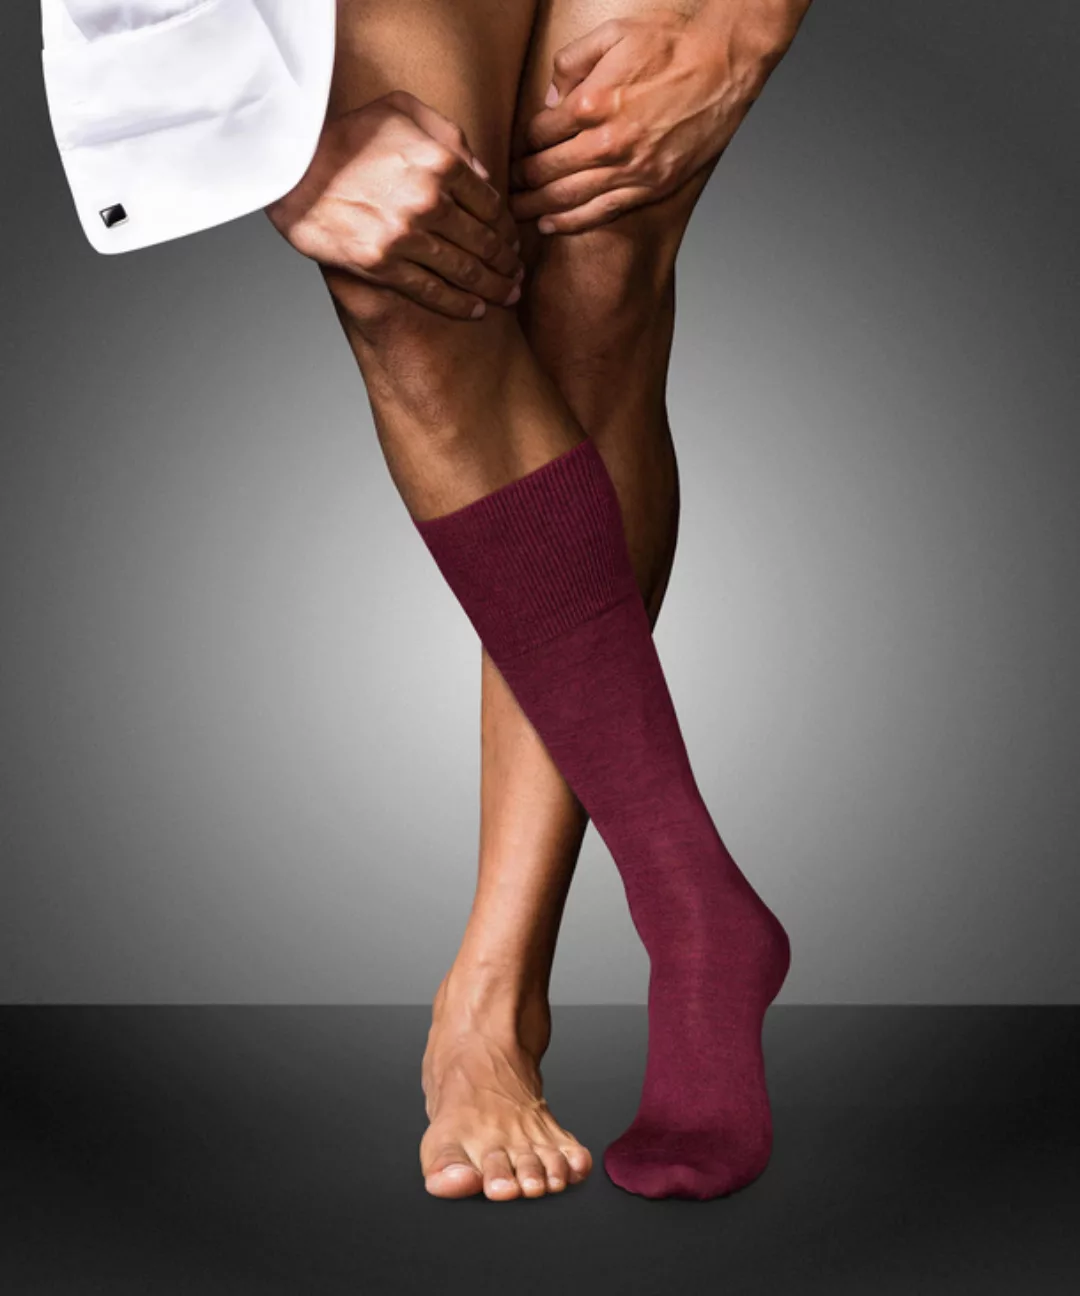 FALKE No. 6 Finest Merino & Silk Gentlemen Socken, Herren, 45-46, Rot, Uni, günstig online kaufen